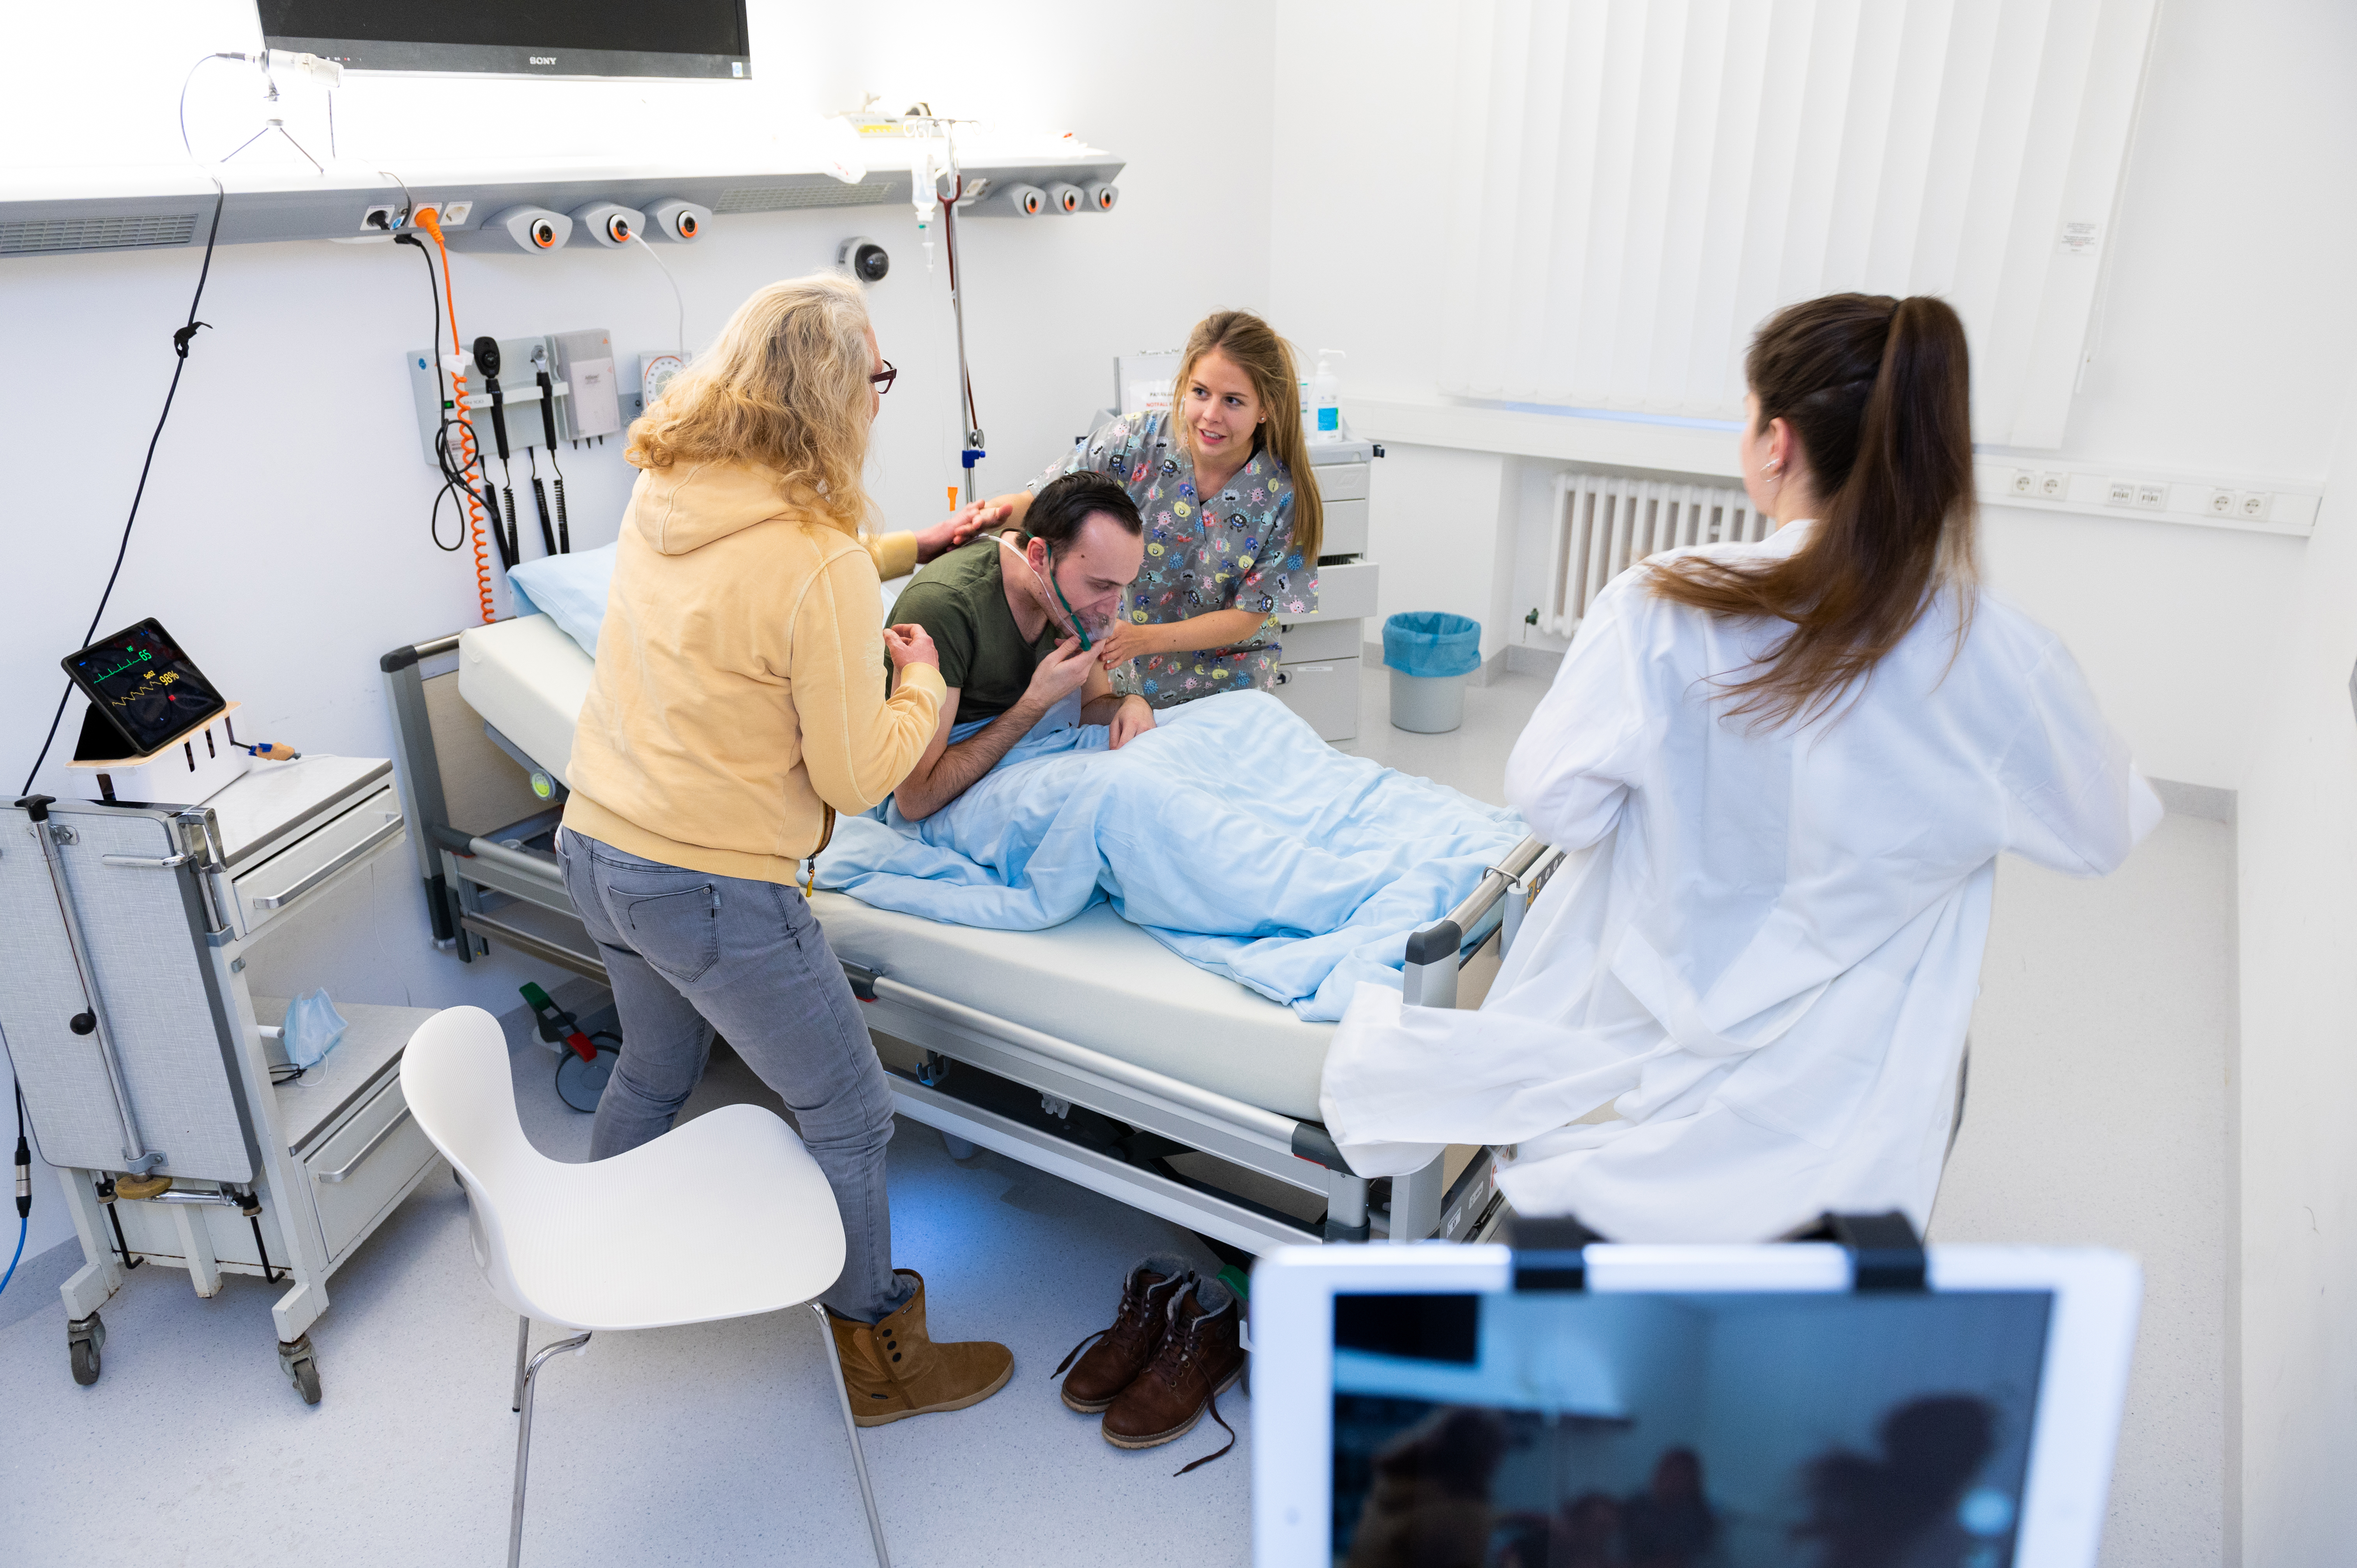 Studierende und Pflegeauszubildende stehen um ein Krankenbett, in dem ein Patient mit Atemmaske liegt und üben eine Notfallsituation.